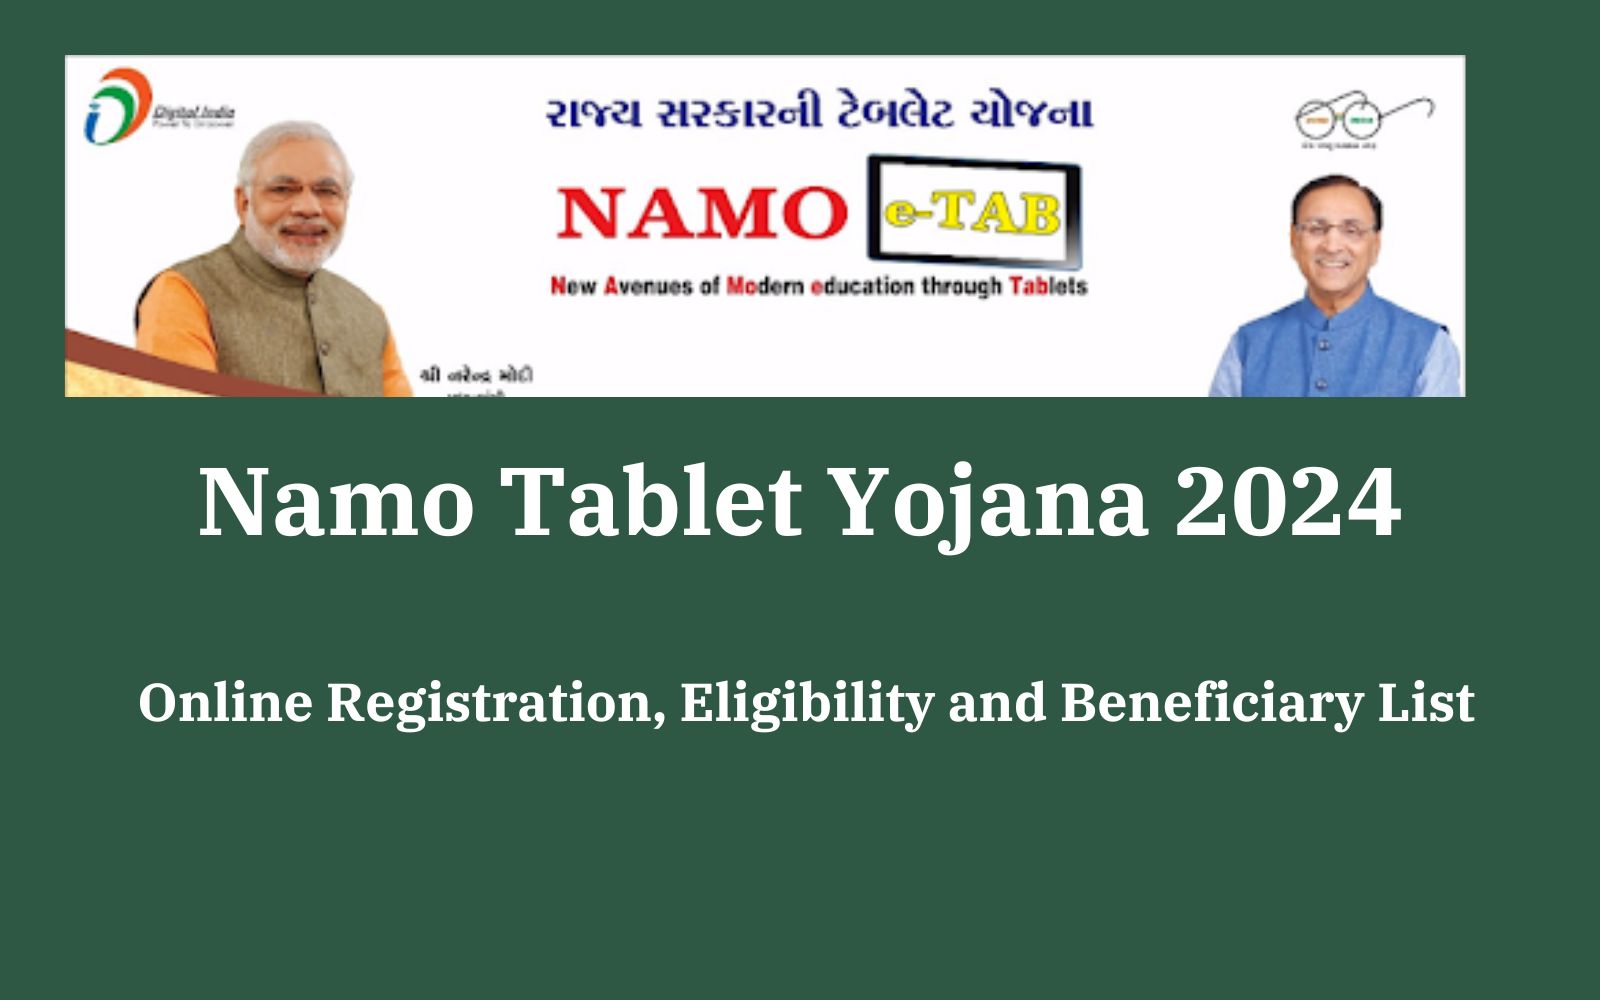 Namo Tablet Yojana 2024